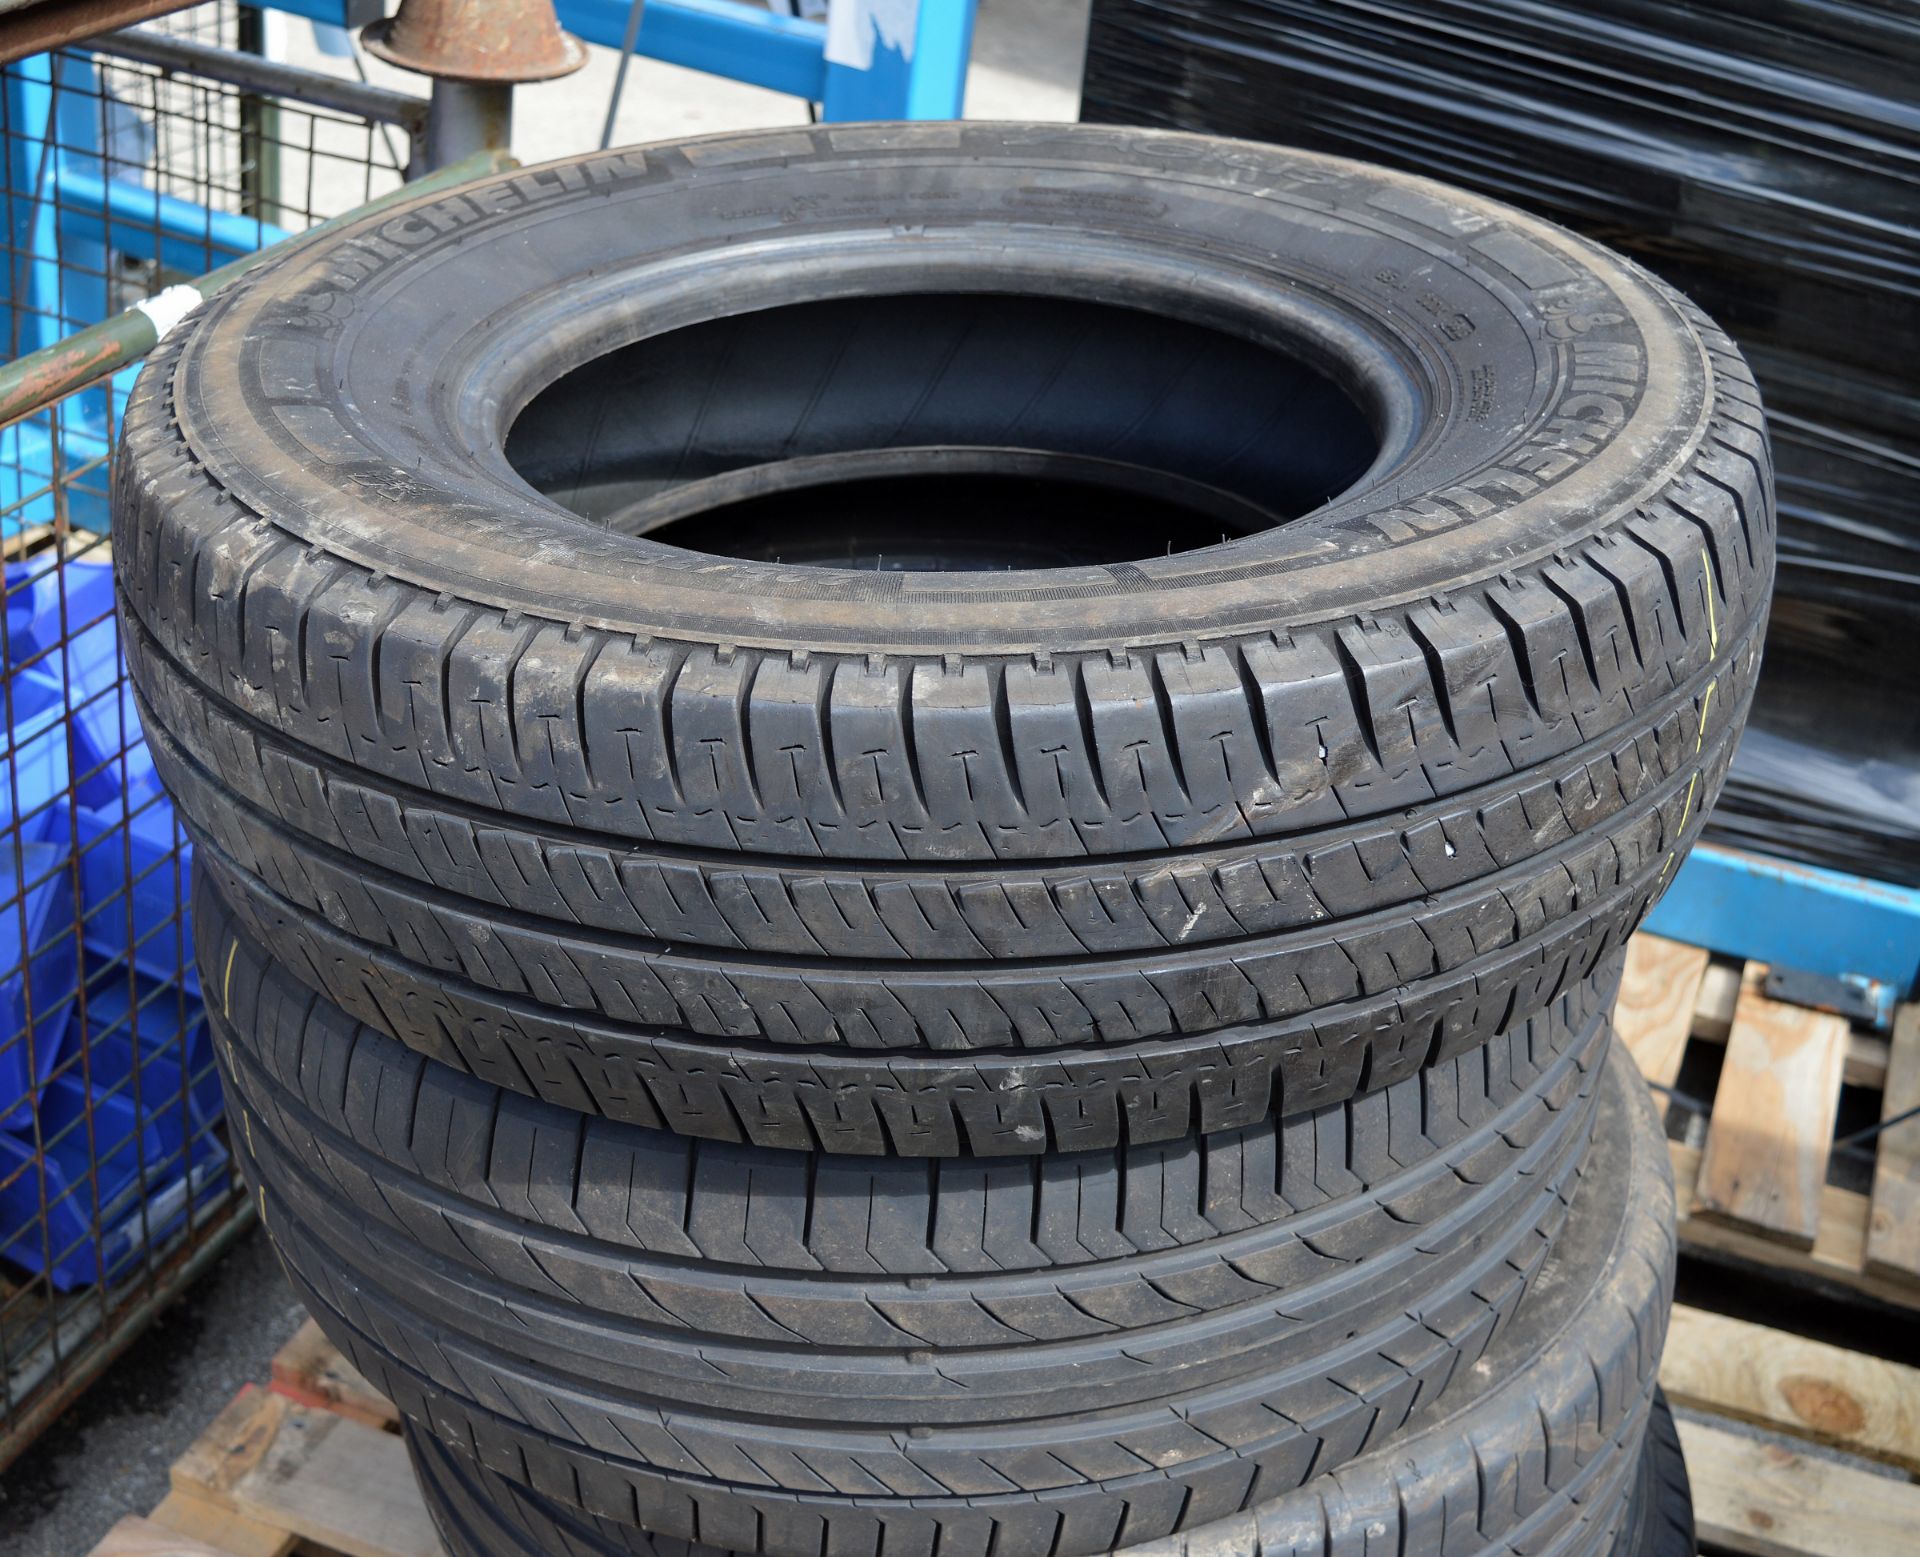 4x Vehicle tyres - Image 2 of 3